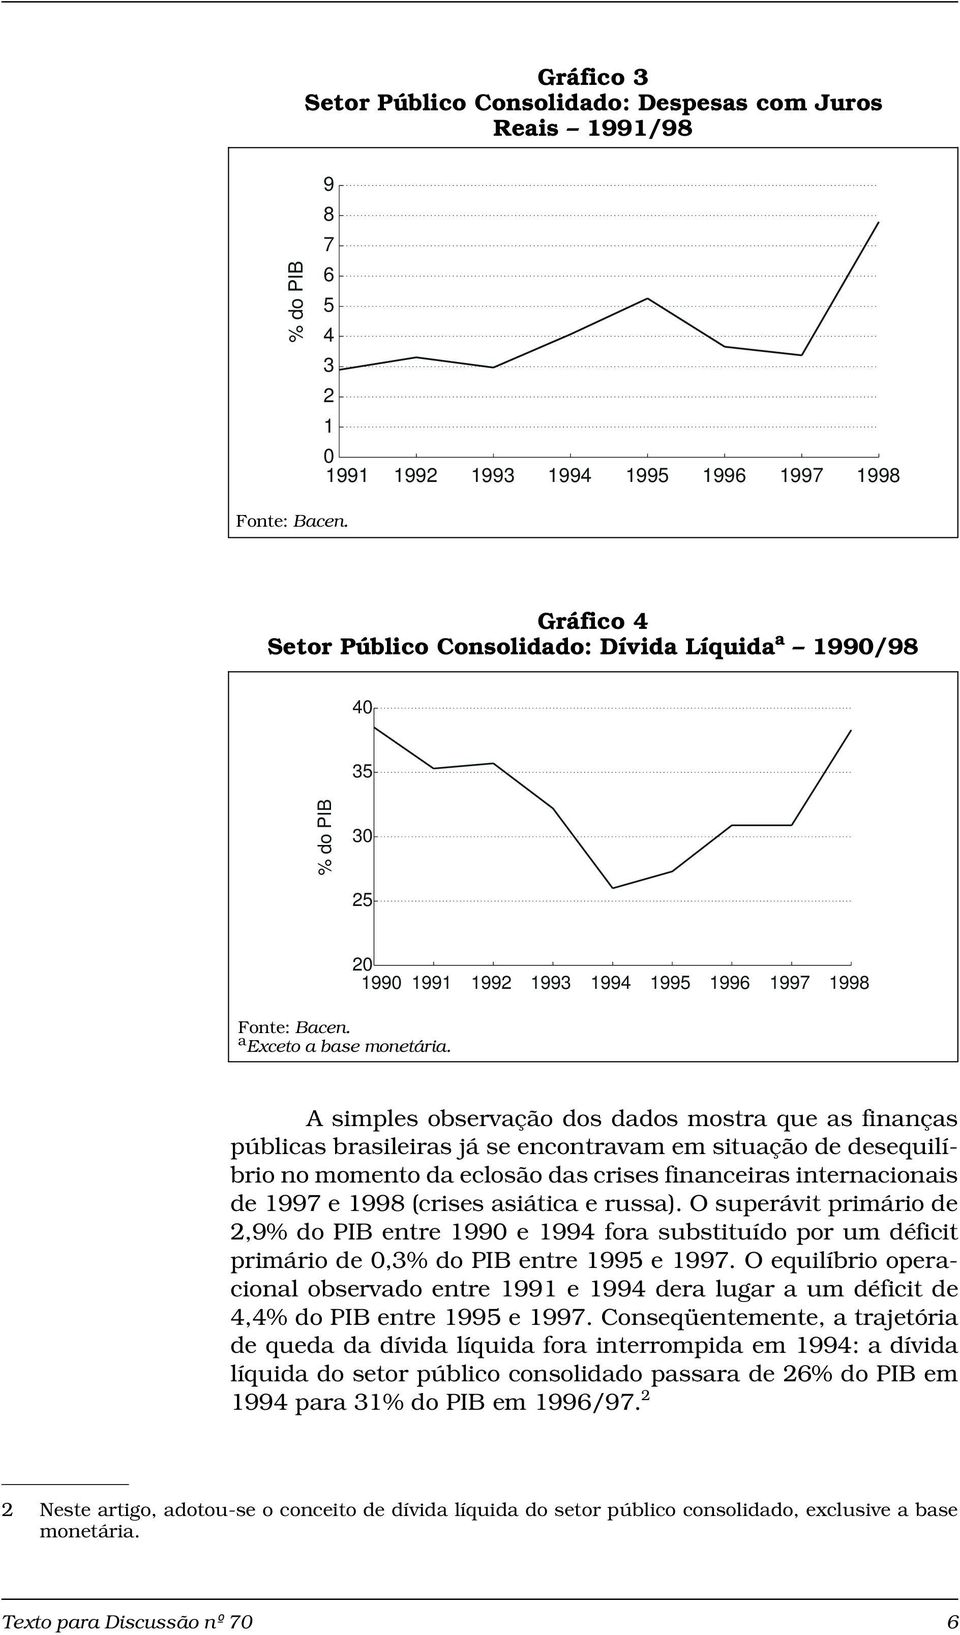 20 1990 1991 1992 1993 1994 1995 1996 1997 1998 A simples observação dos dados mostra que as finanças públicas brasileiras já se encontravam em situação de desequilíbrio no momento da eclosão das